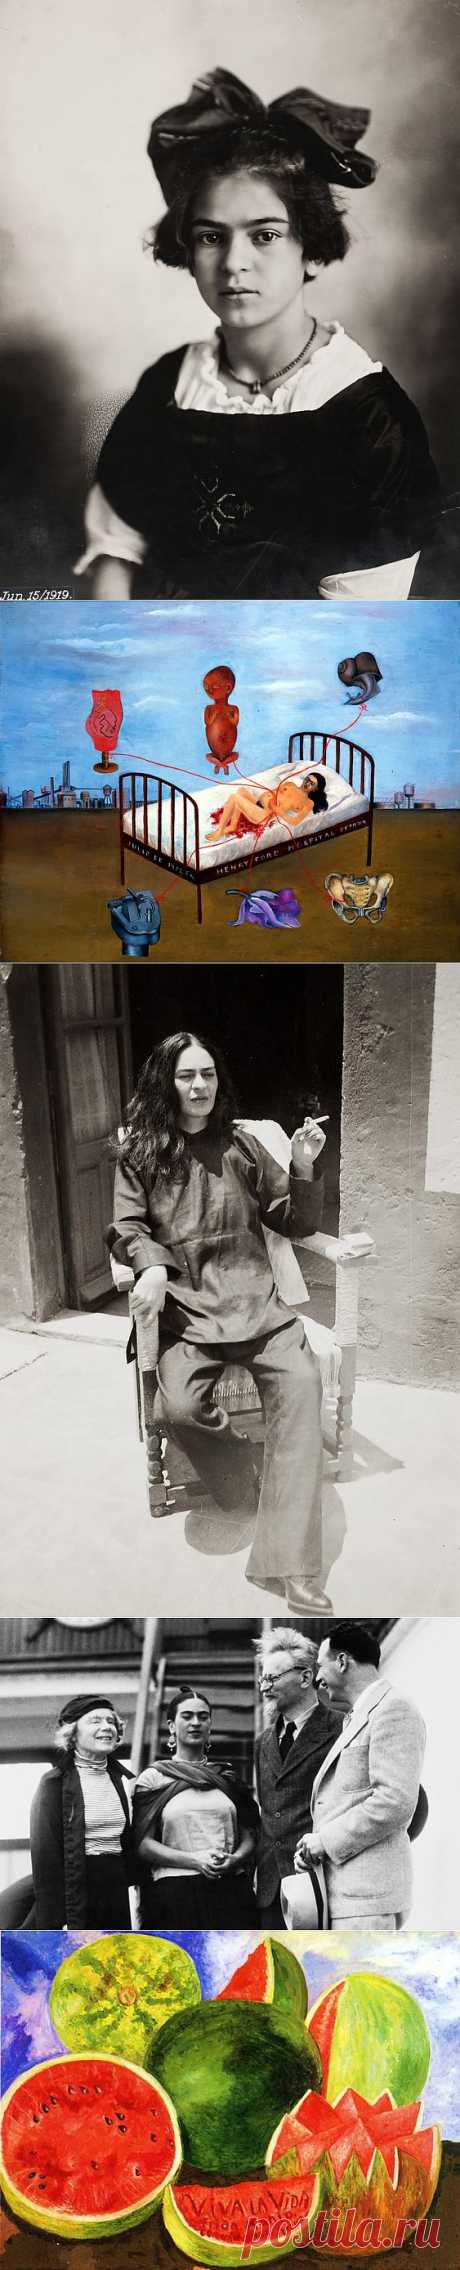 Наркоманка и коммунистка. Гениальная художница и символ Мексики.
Фрида Кало.
Сегодня ее картины висят в лучших музеях мира, а на аукционах продаются за миллионы долларов.